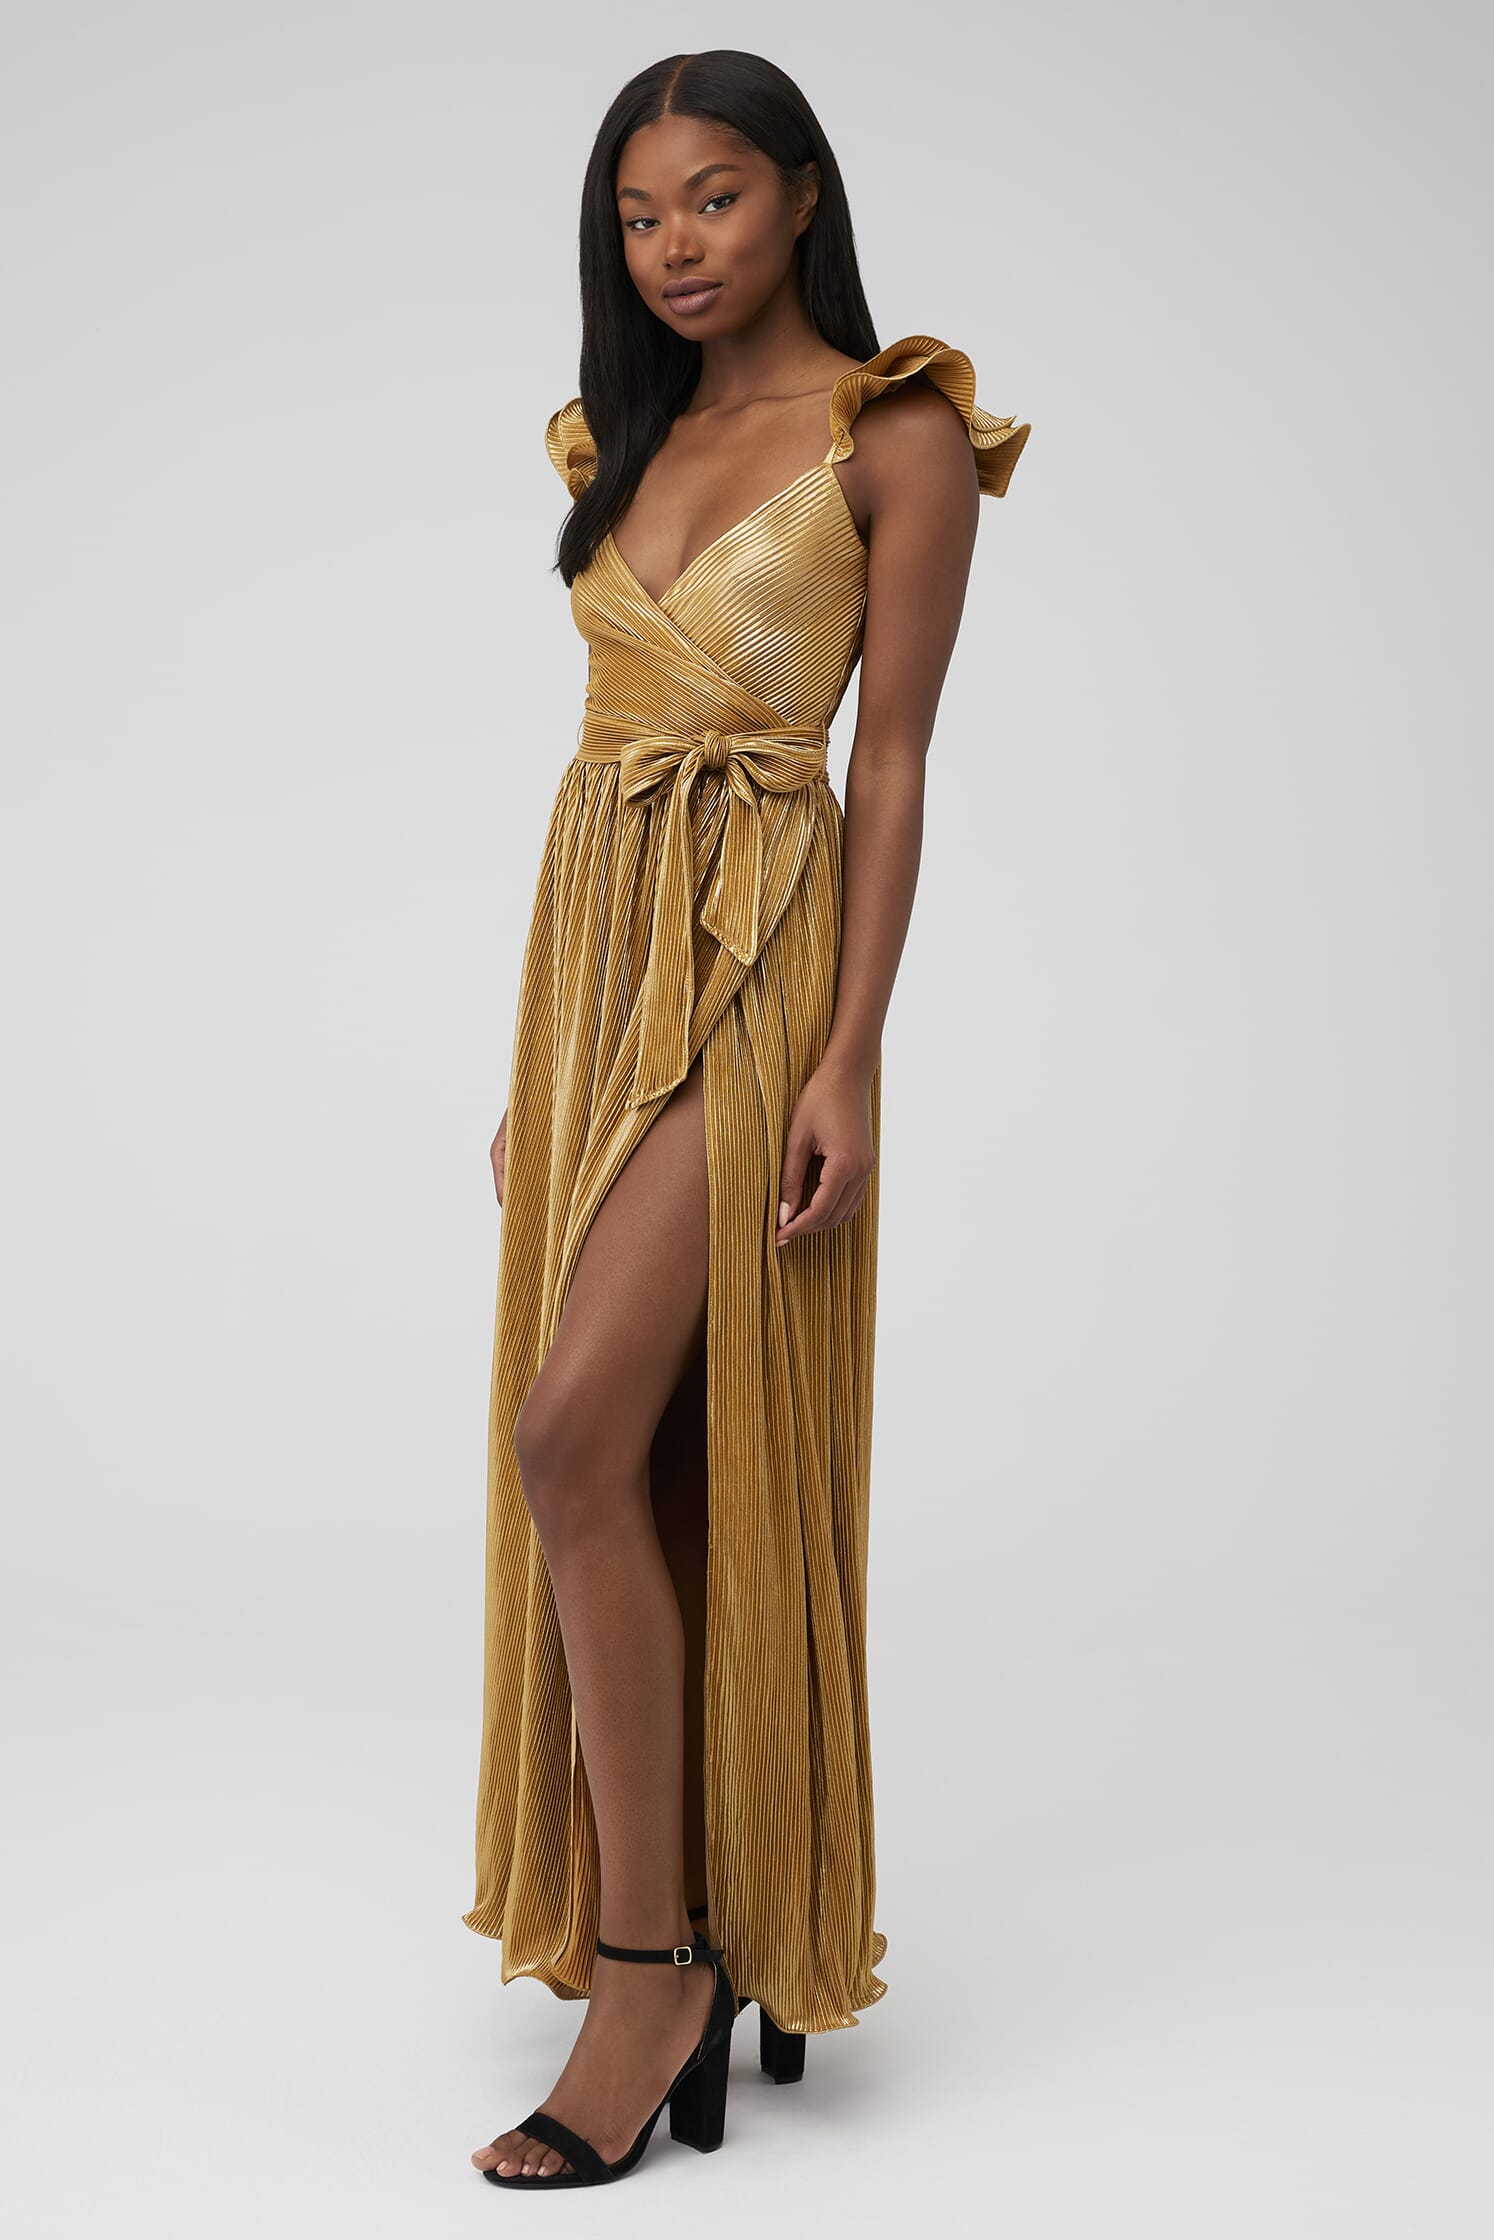 Saylor | Imara Maxi Dress in Gold | FashionPass